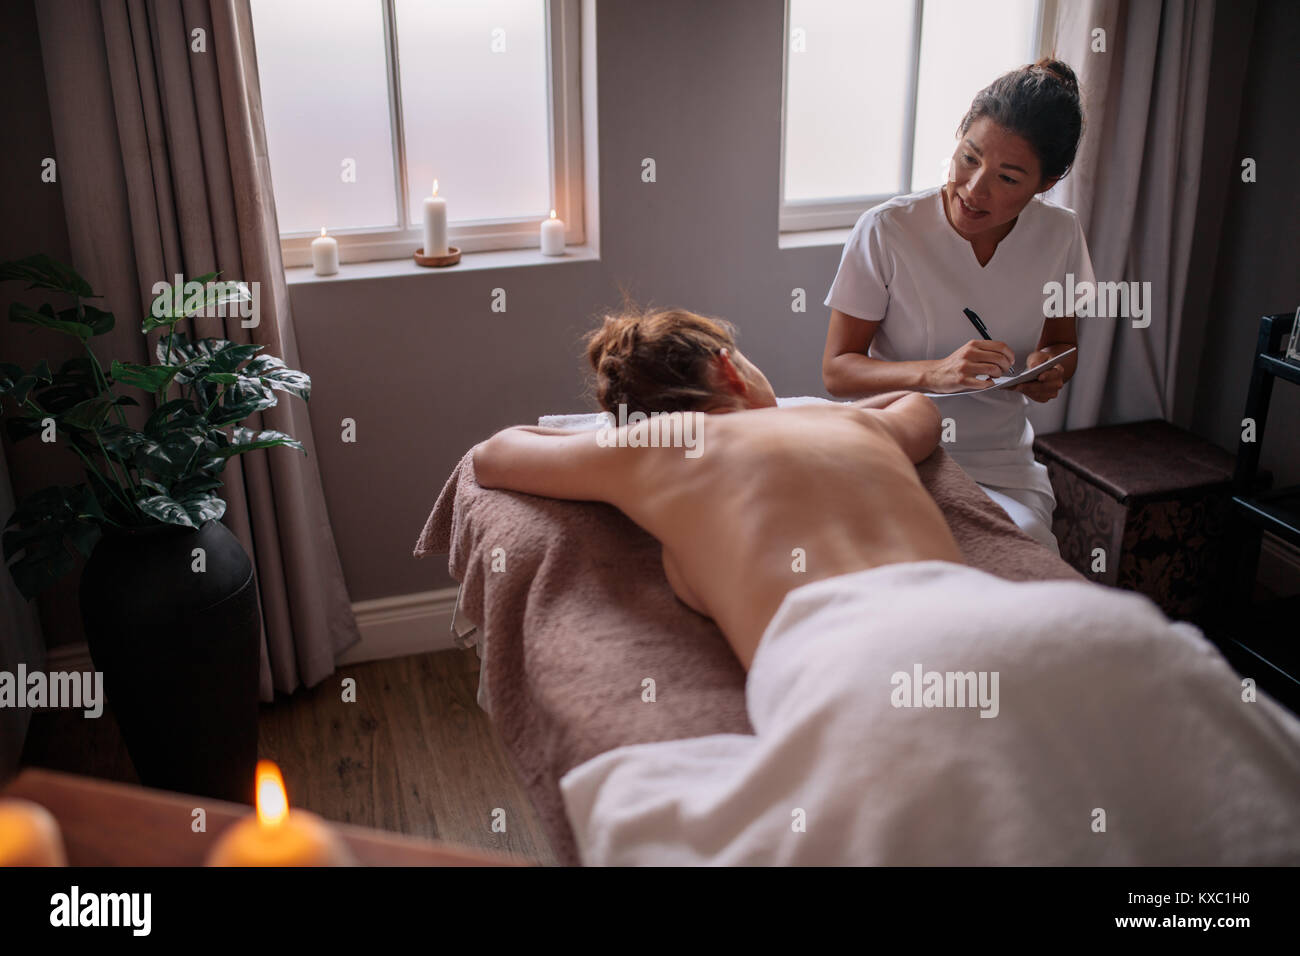 Weibliche Massage therapist Gespräch mit Frau im Wellnesscenter und Notizen zu machen. Kosmetikerin Prüfung der weiblichen Kunden vor der Kur. Stockfoto